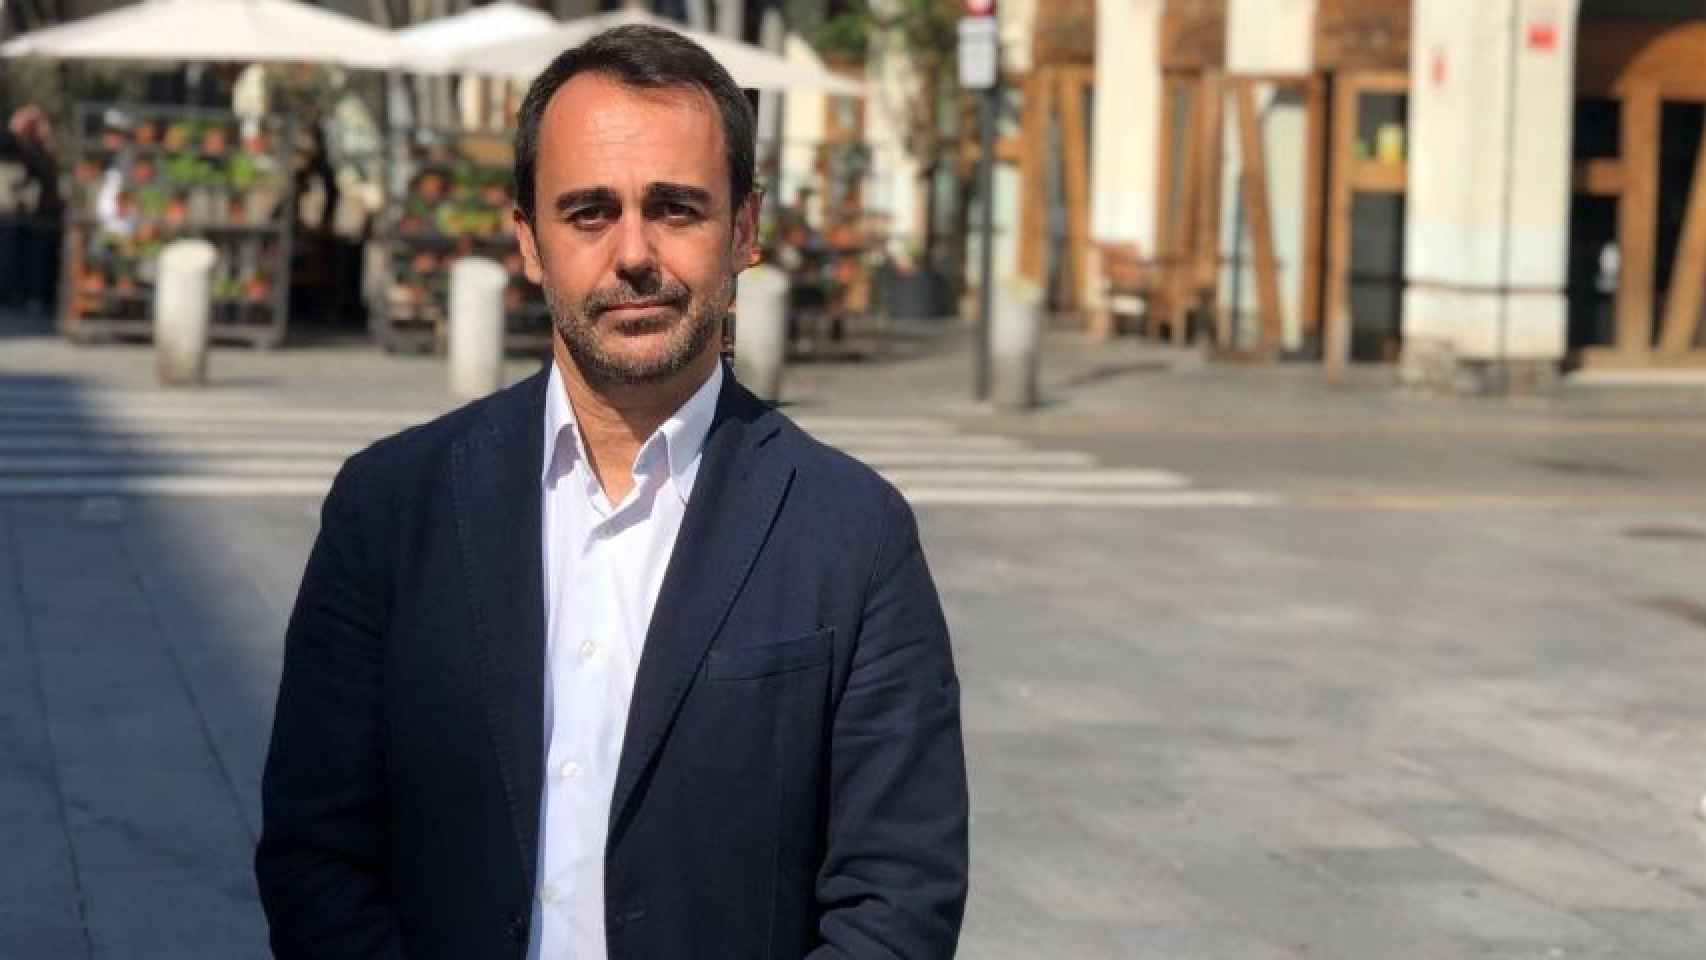 Óscar Ramírez, concejal del PP en el Ayuntamiento de Barcelona / PP